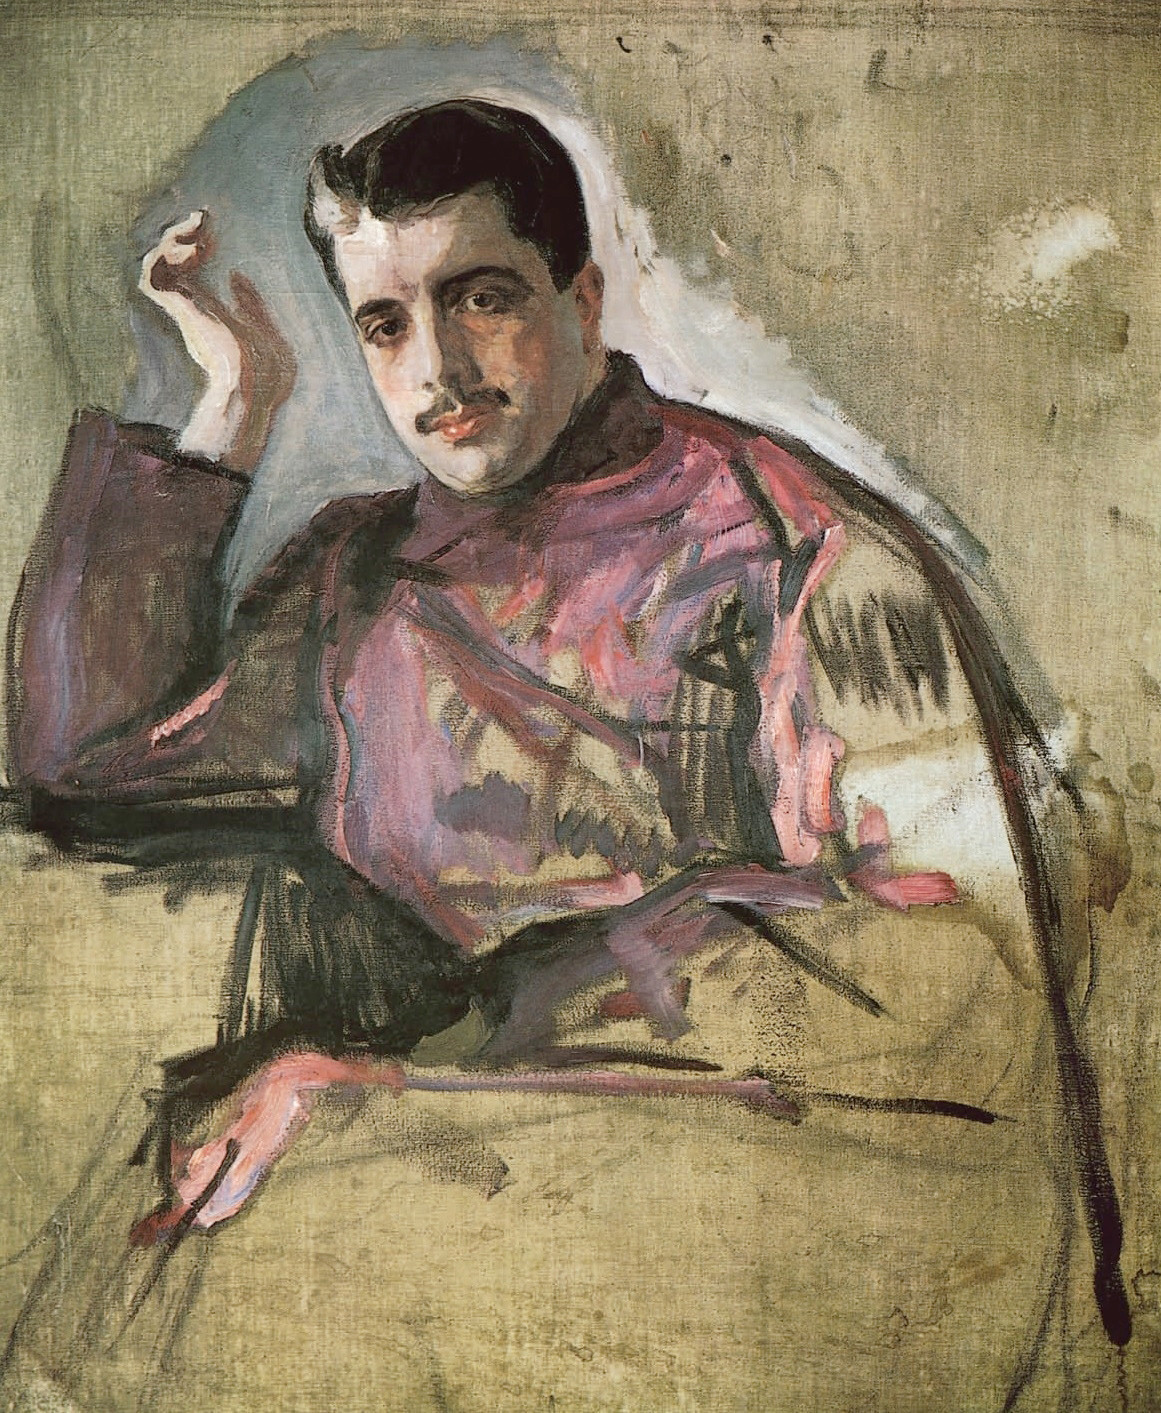 Portrait de Serge Diaghilev par Valentin Serov